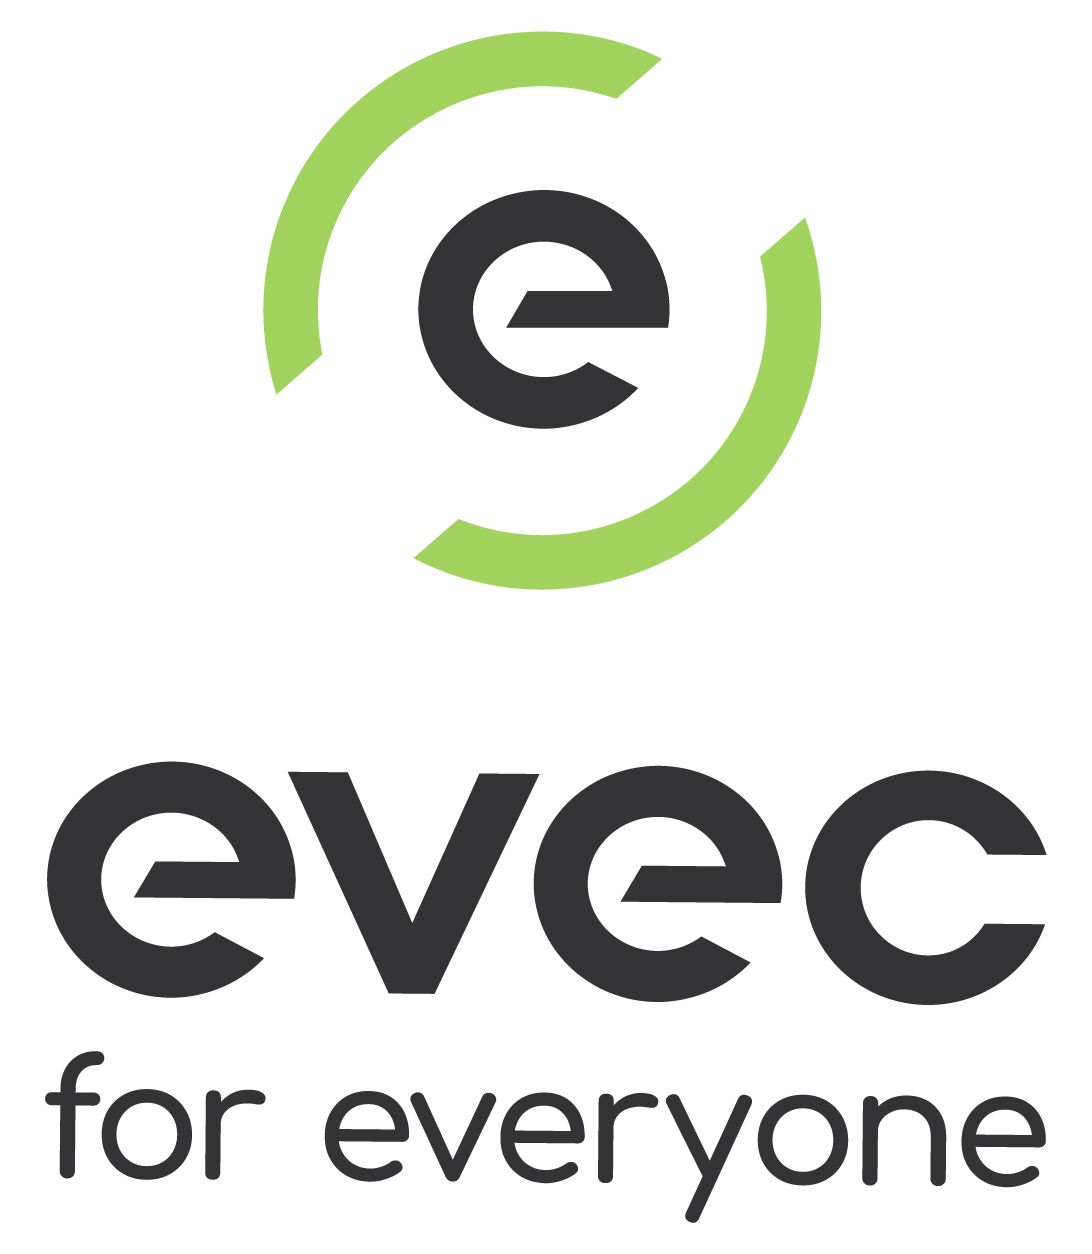 EVEC UK